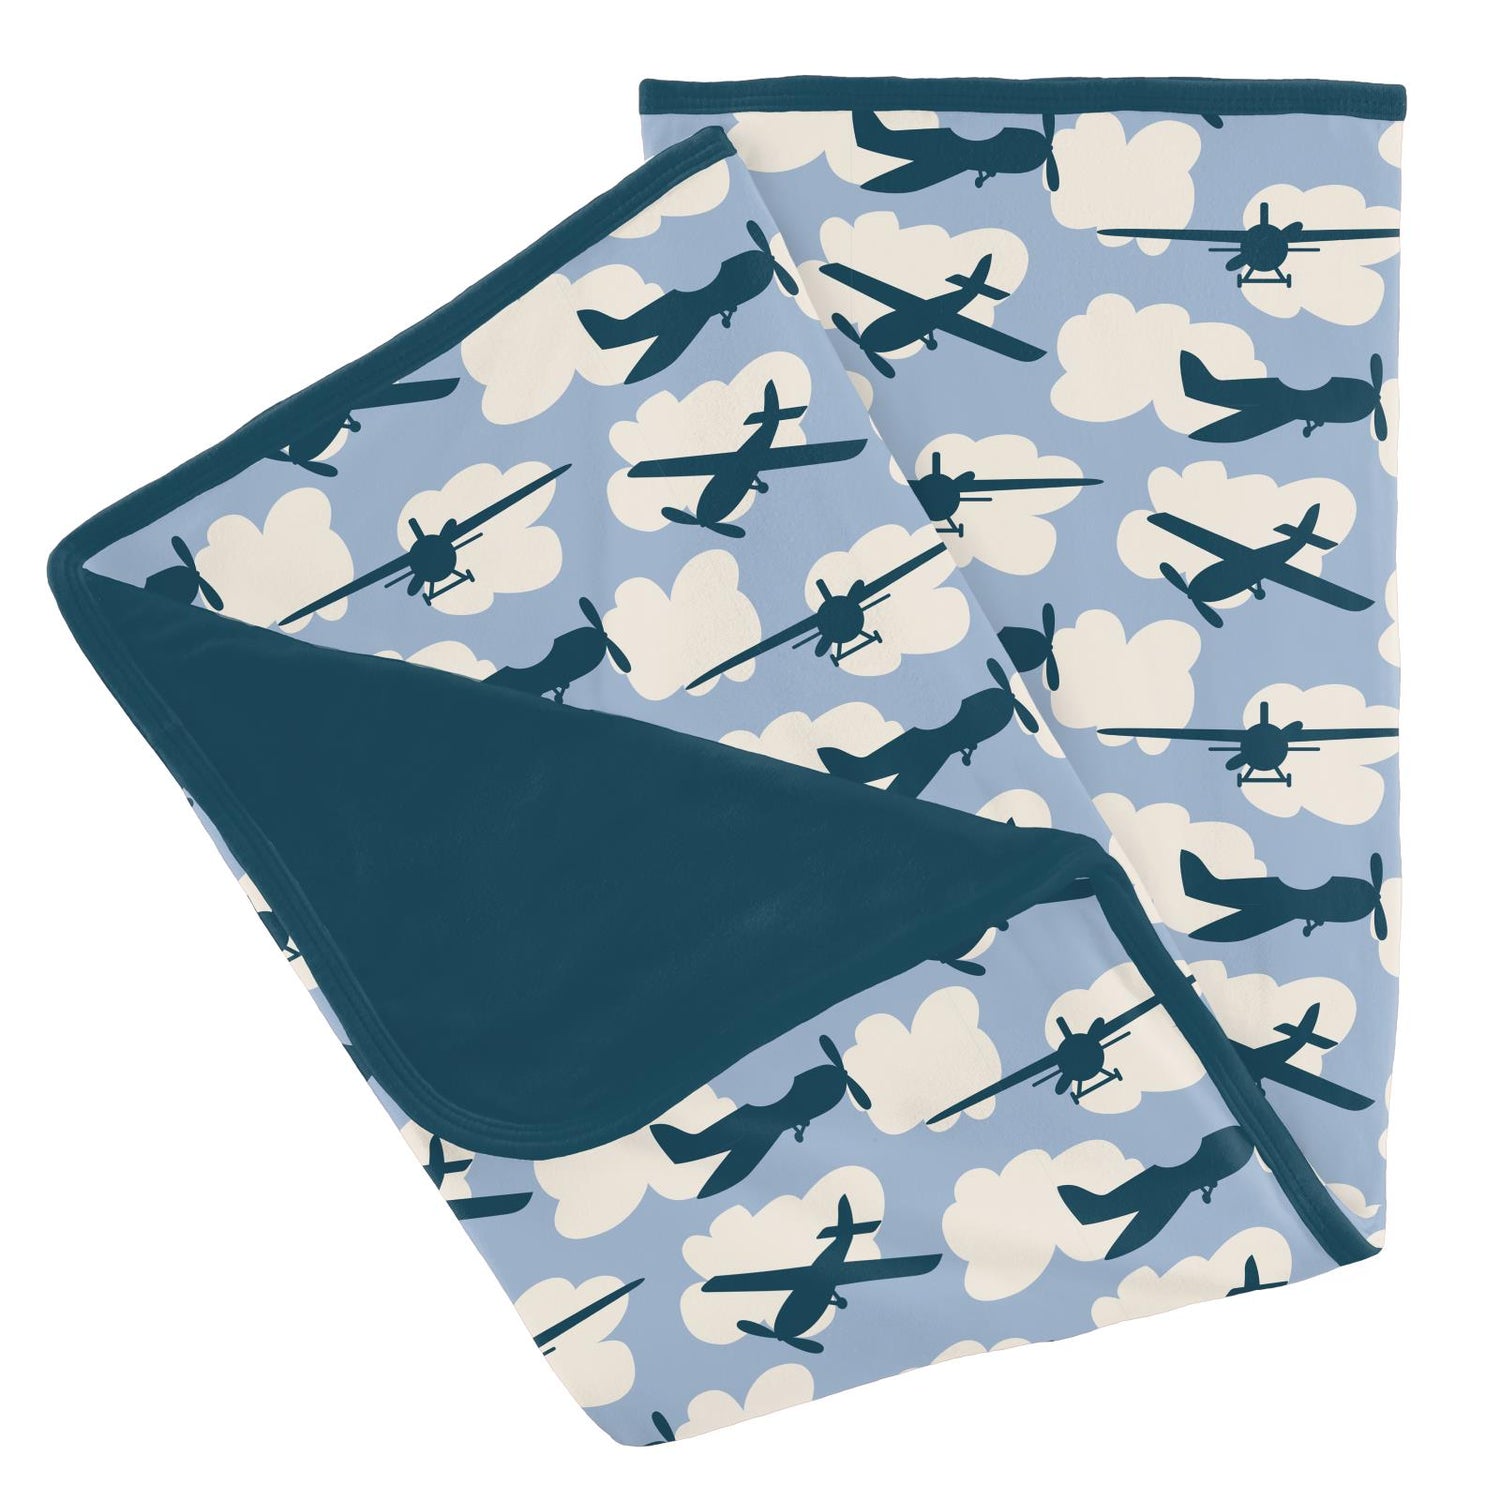 Print Stroller Blanket in Pond Planes